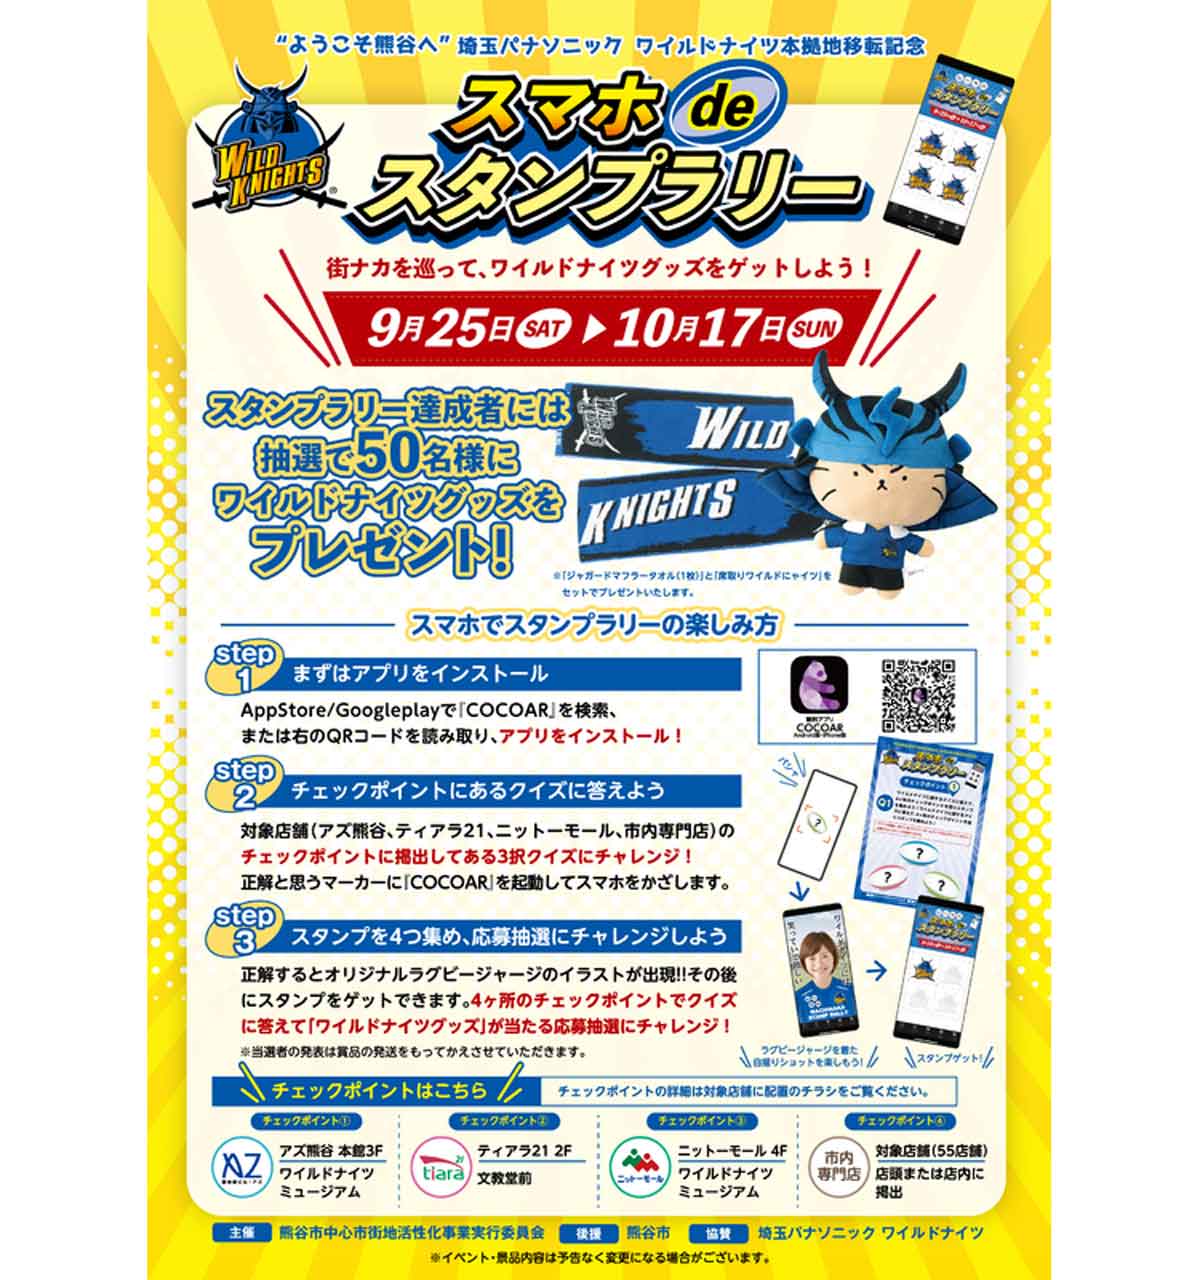 ARスタンプラリーで「埼玉パナソニック ワイルドナイツ」のグッズが当たるイベントを熊谷市で開催中